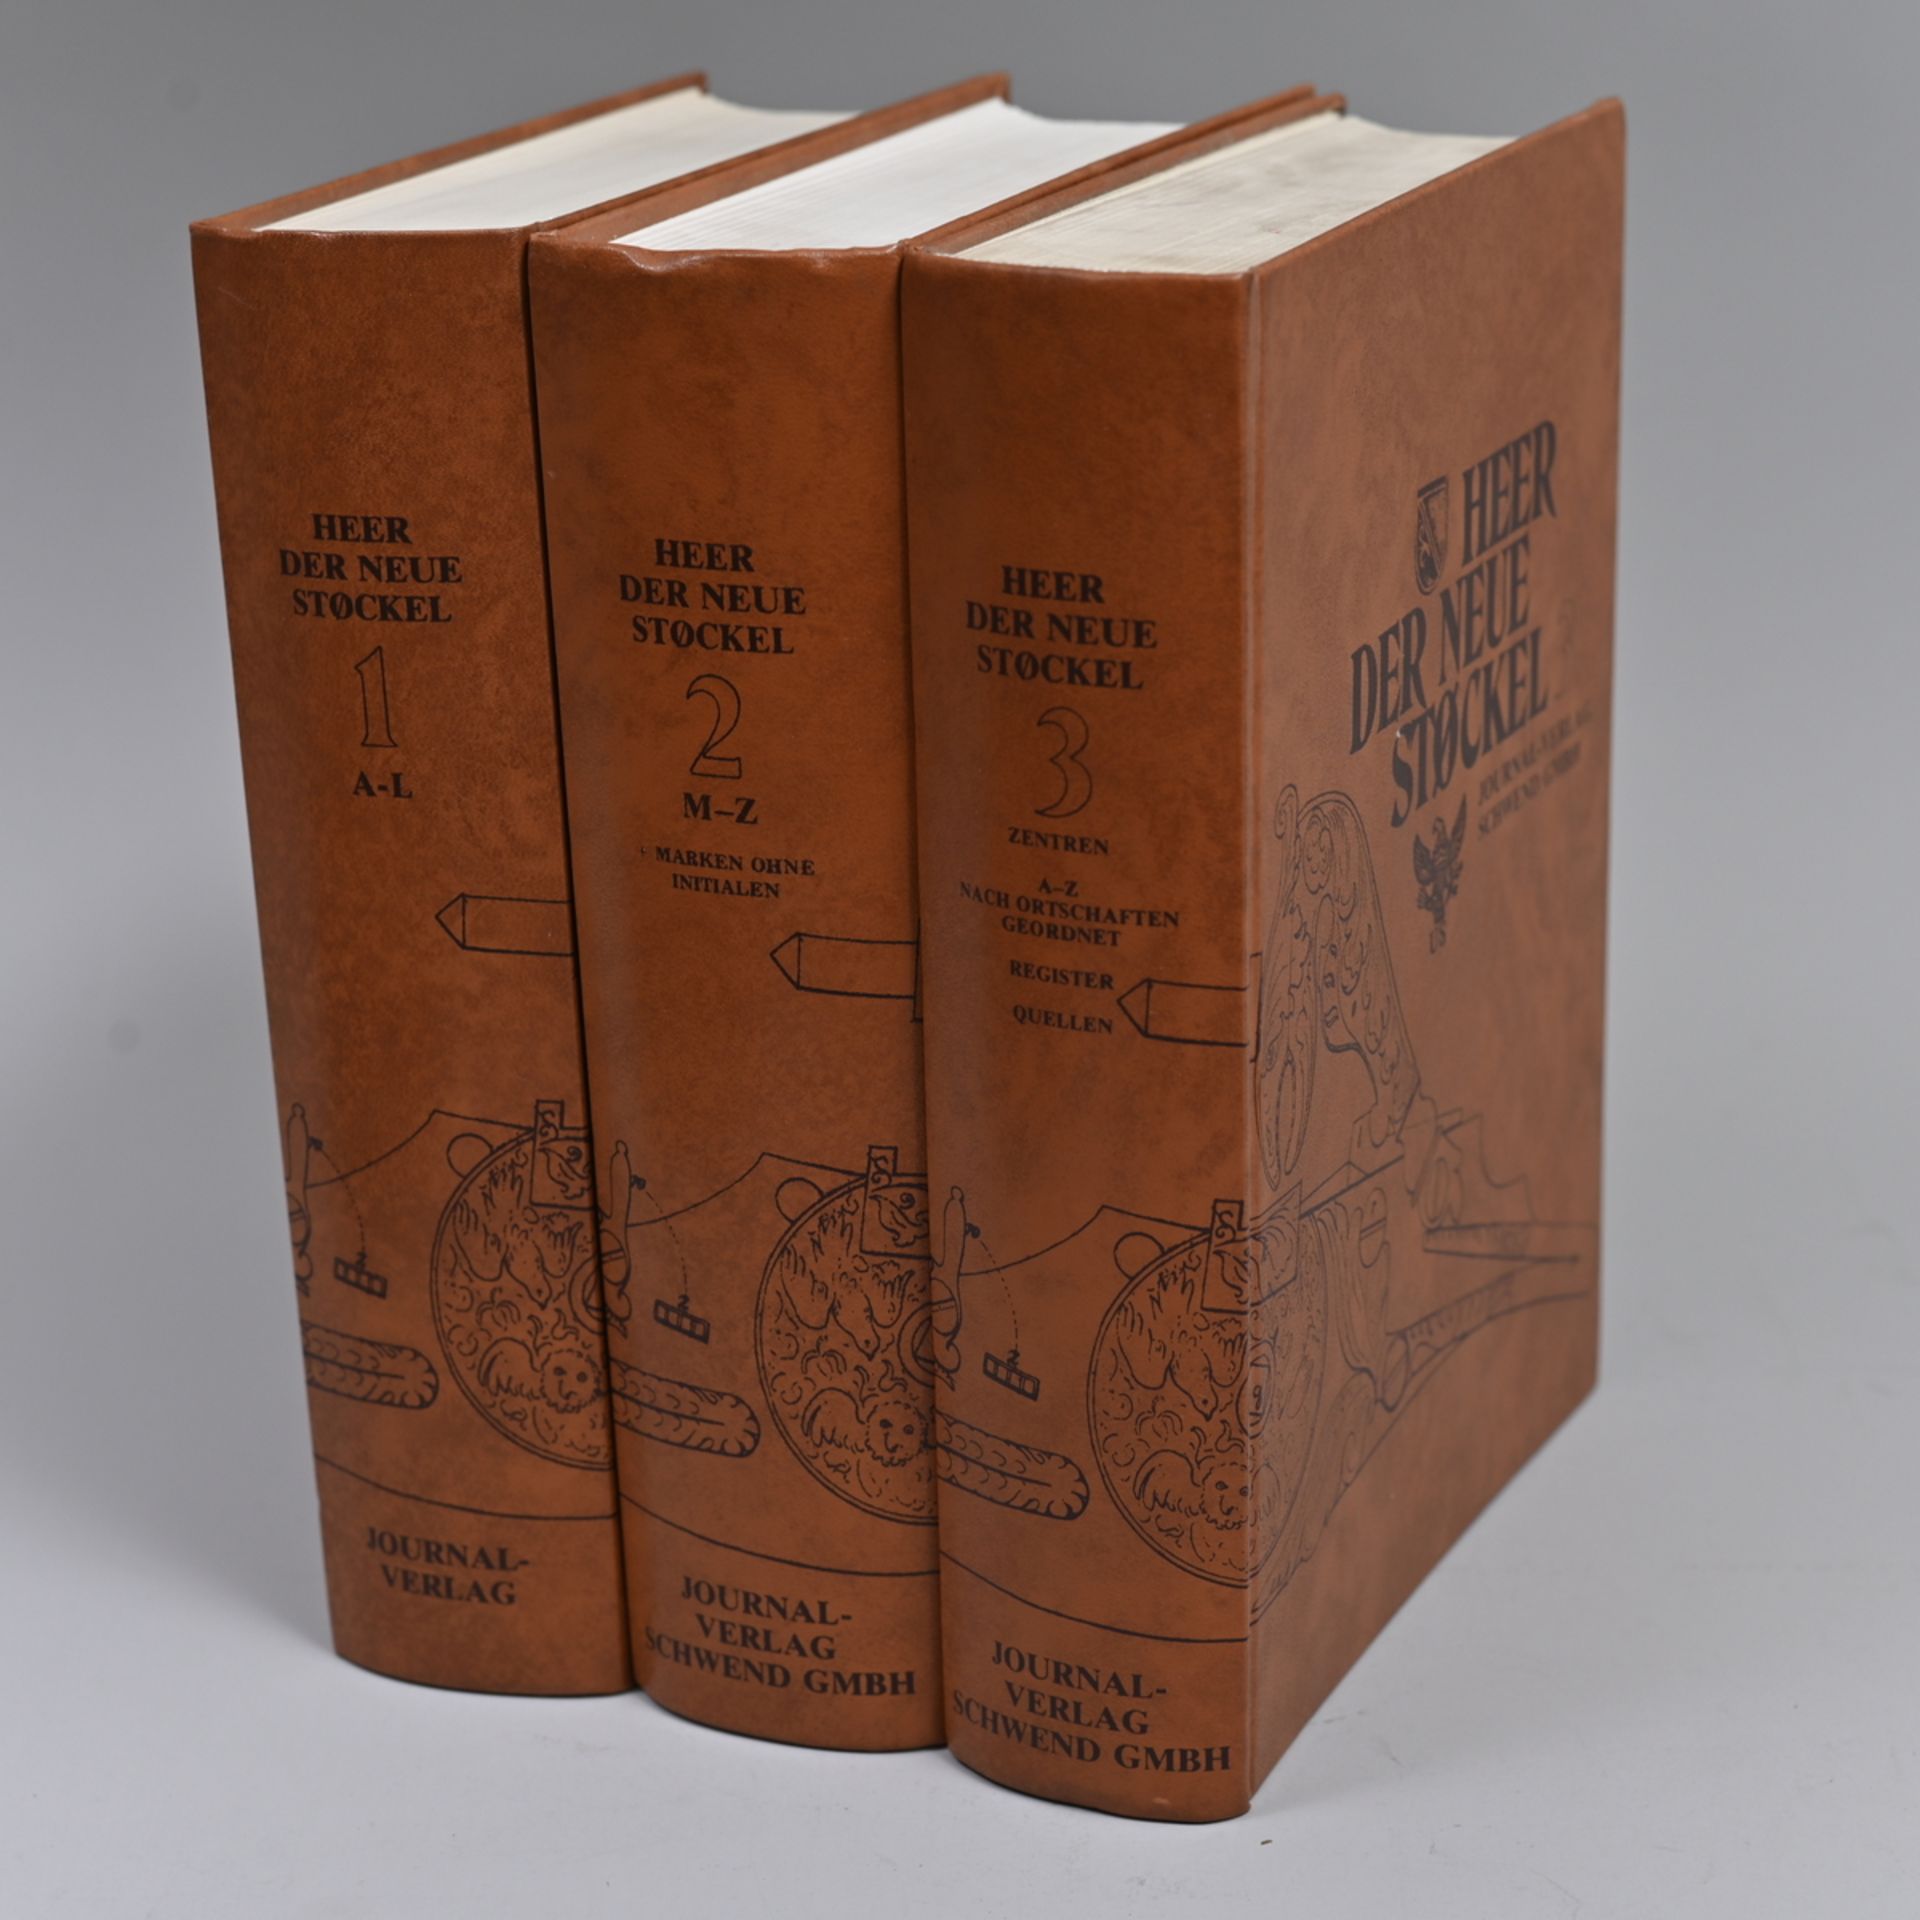 " Der neue Stöckel ", 3 Bände, Eugéne Heer, Journal -Verlag Schwend GmbH, Schwäbisch Hall, 1978,